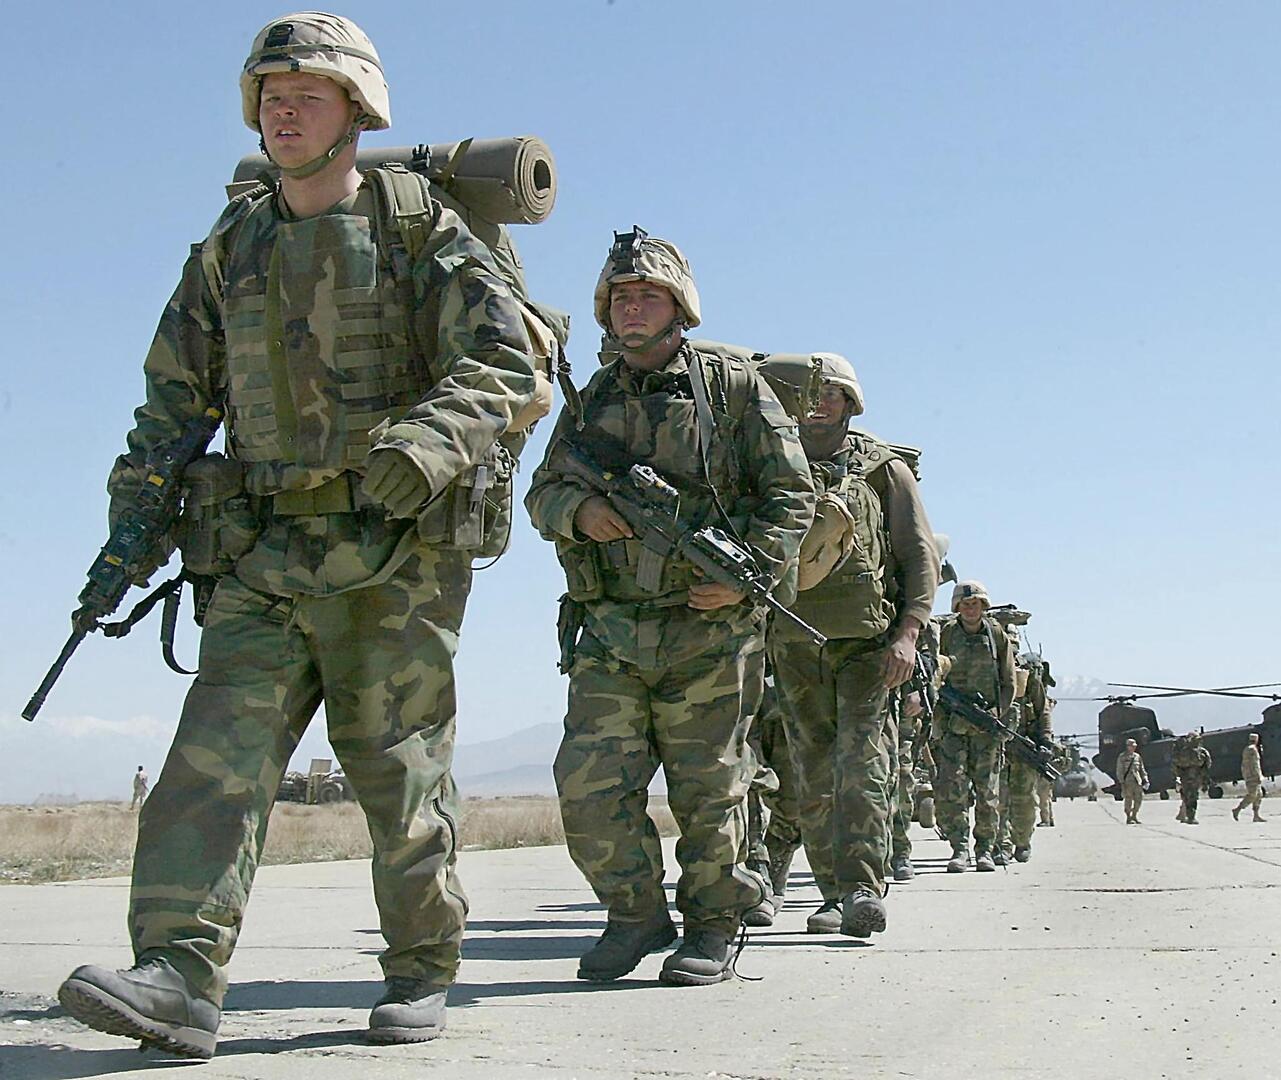 رئيس وزراء أردني سابق ينفي ما نقل على لسانه بشأن القوات الأمريكية في أفغانستان